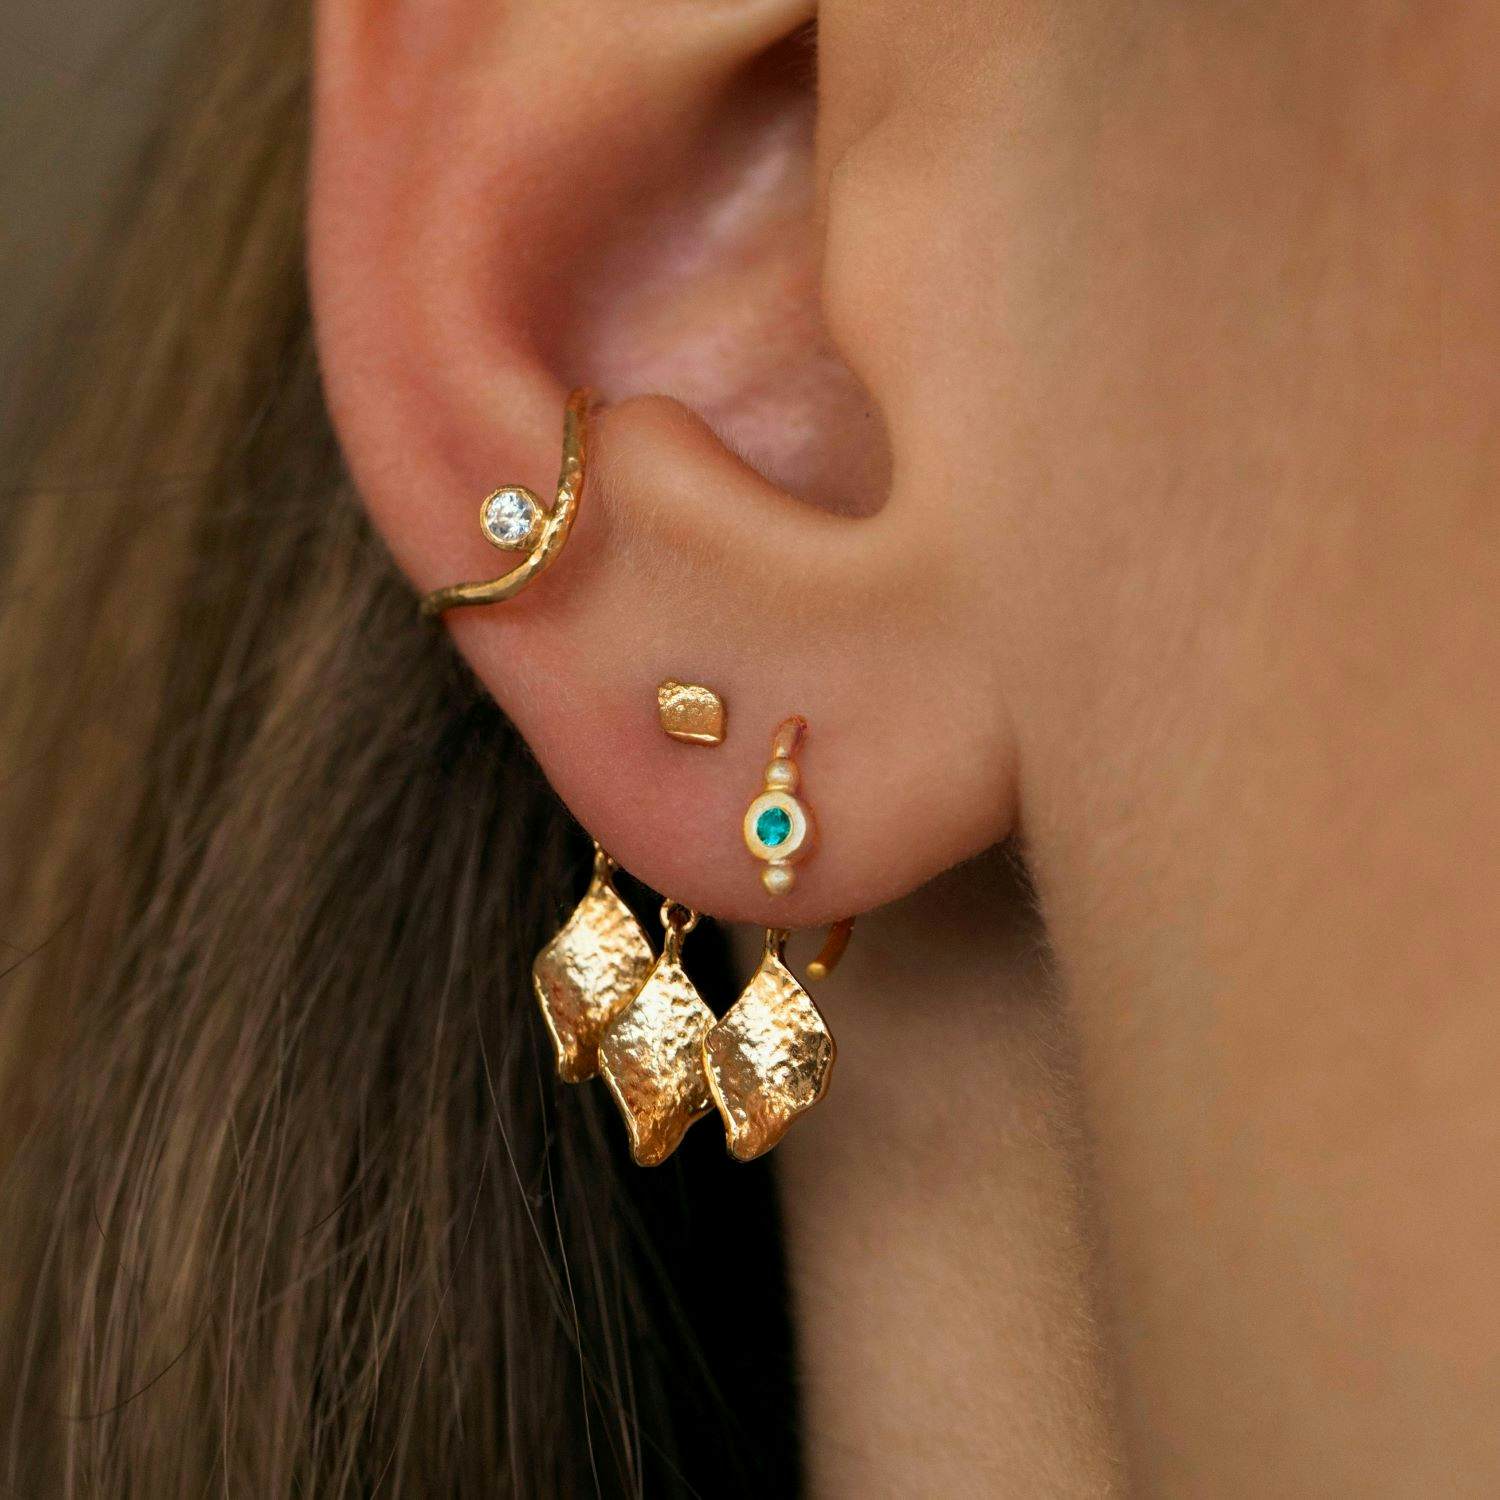 Wavy Ear Cuff With Stone fra STINE A Jewelry i Sølv Sterling 925